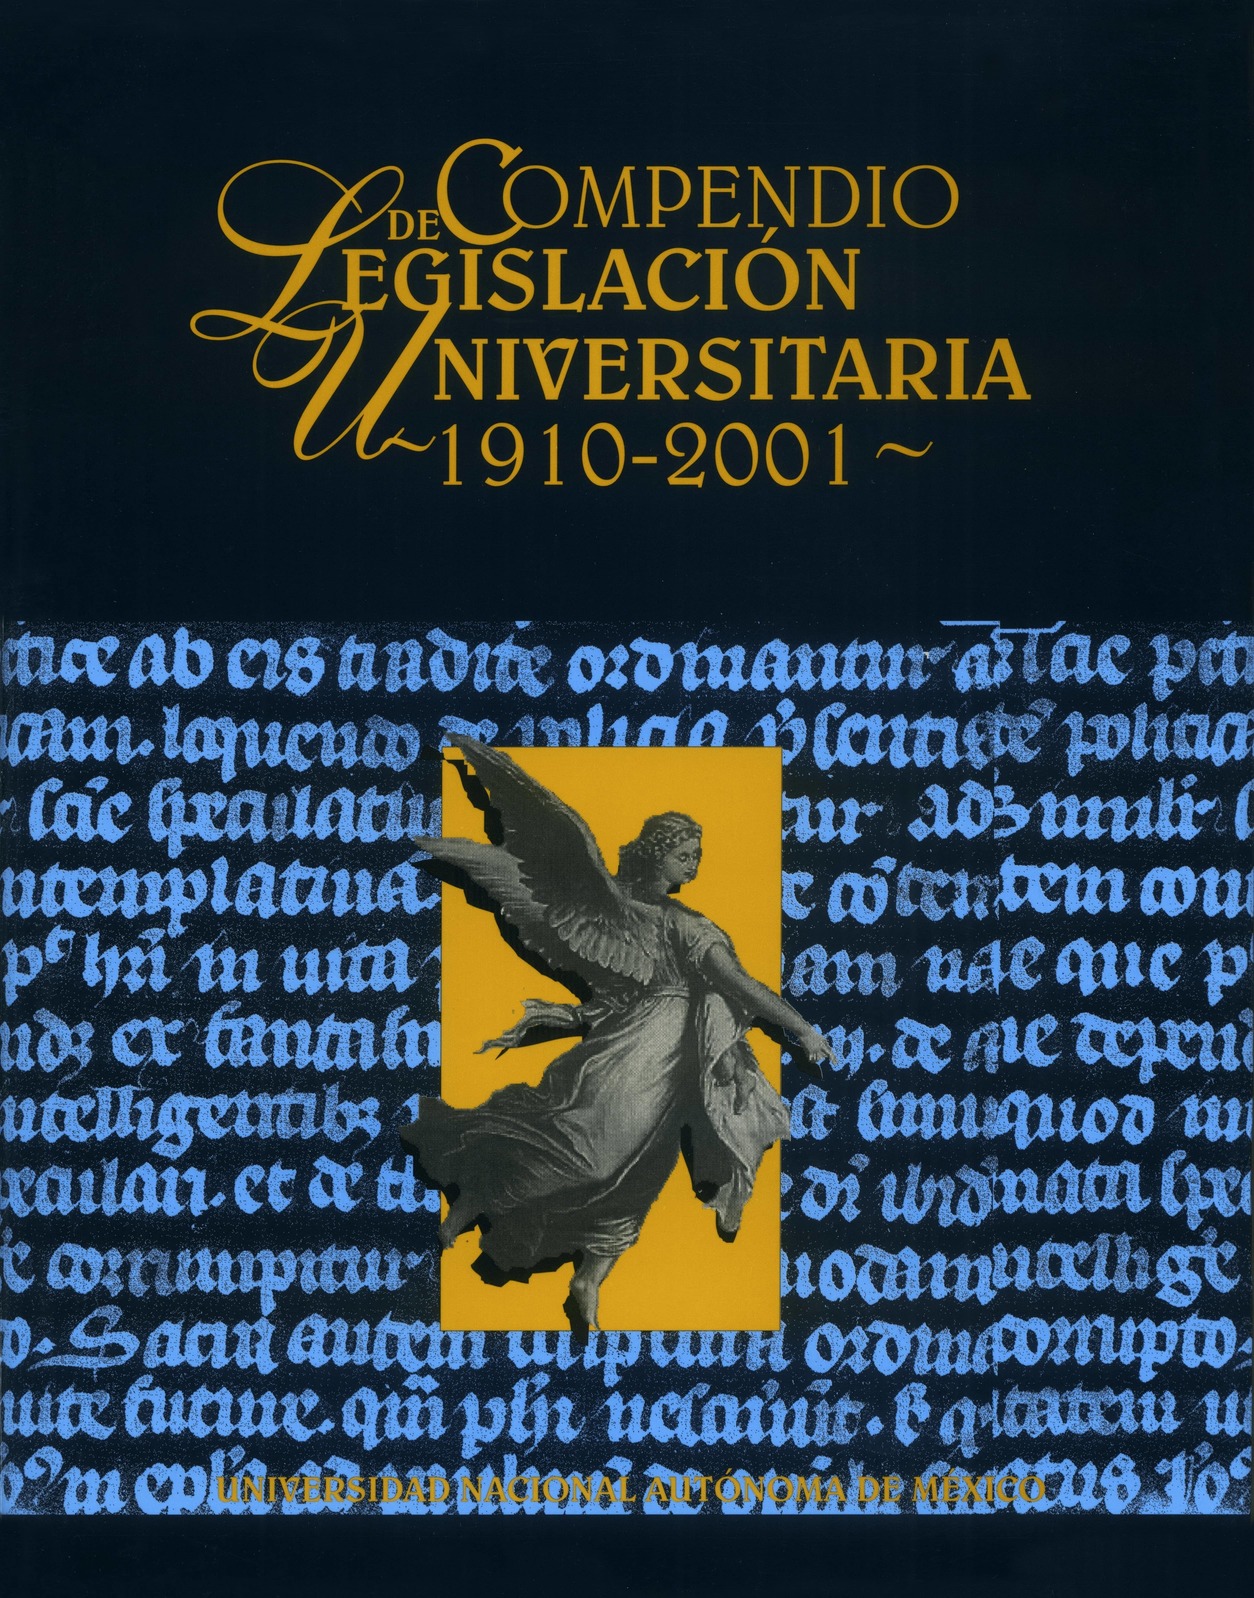 Compendio de Legislación Universitaria 1910-2001, Tomo V